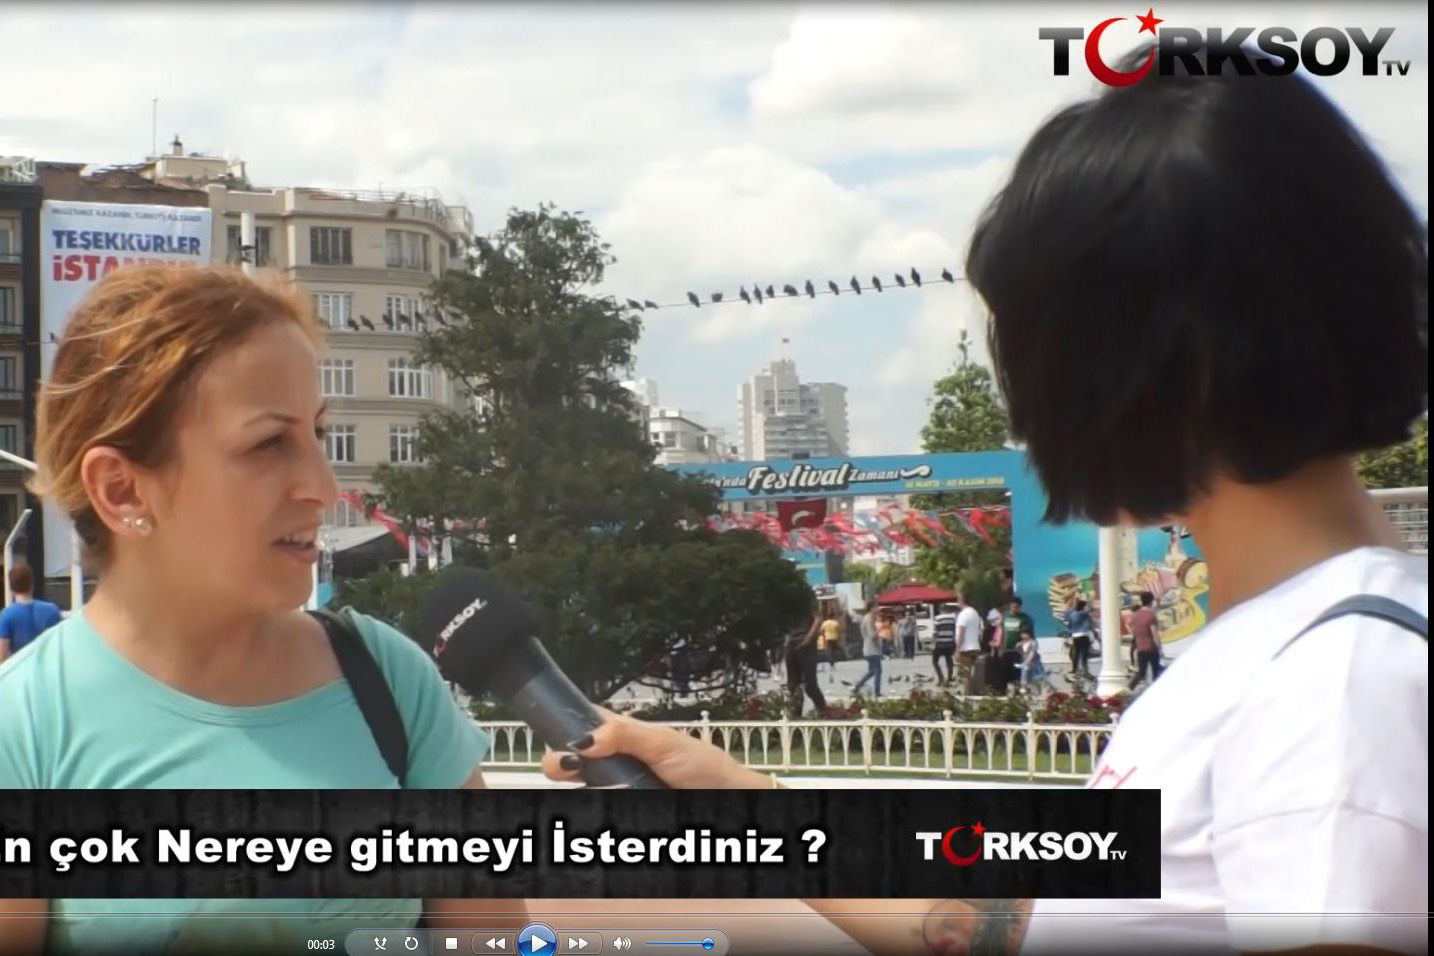 Türksoy Tv İle sokağın nabzı